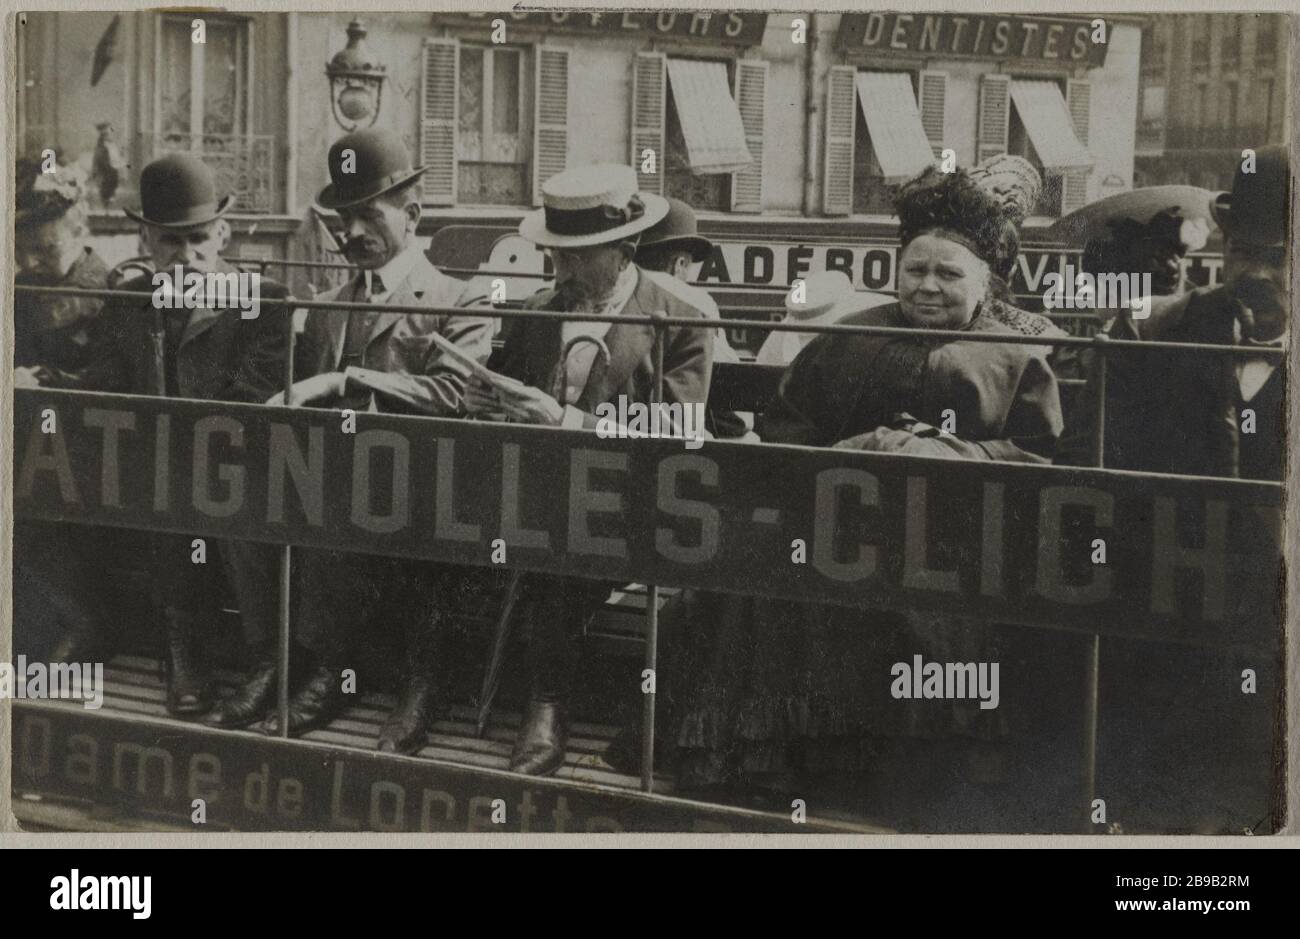 The OMNIBUS BELLEVILLE-CLICHY PLACE CLICHY, 17TH DISTRICT, PARIS L'omnibus Batignolles-Clichy, place de Clichy, Paris (XVIIème arr.). 1896. Photographie anonyme. Stock Photo